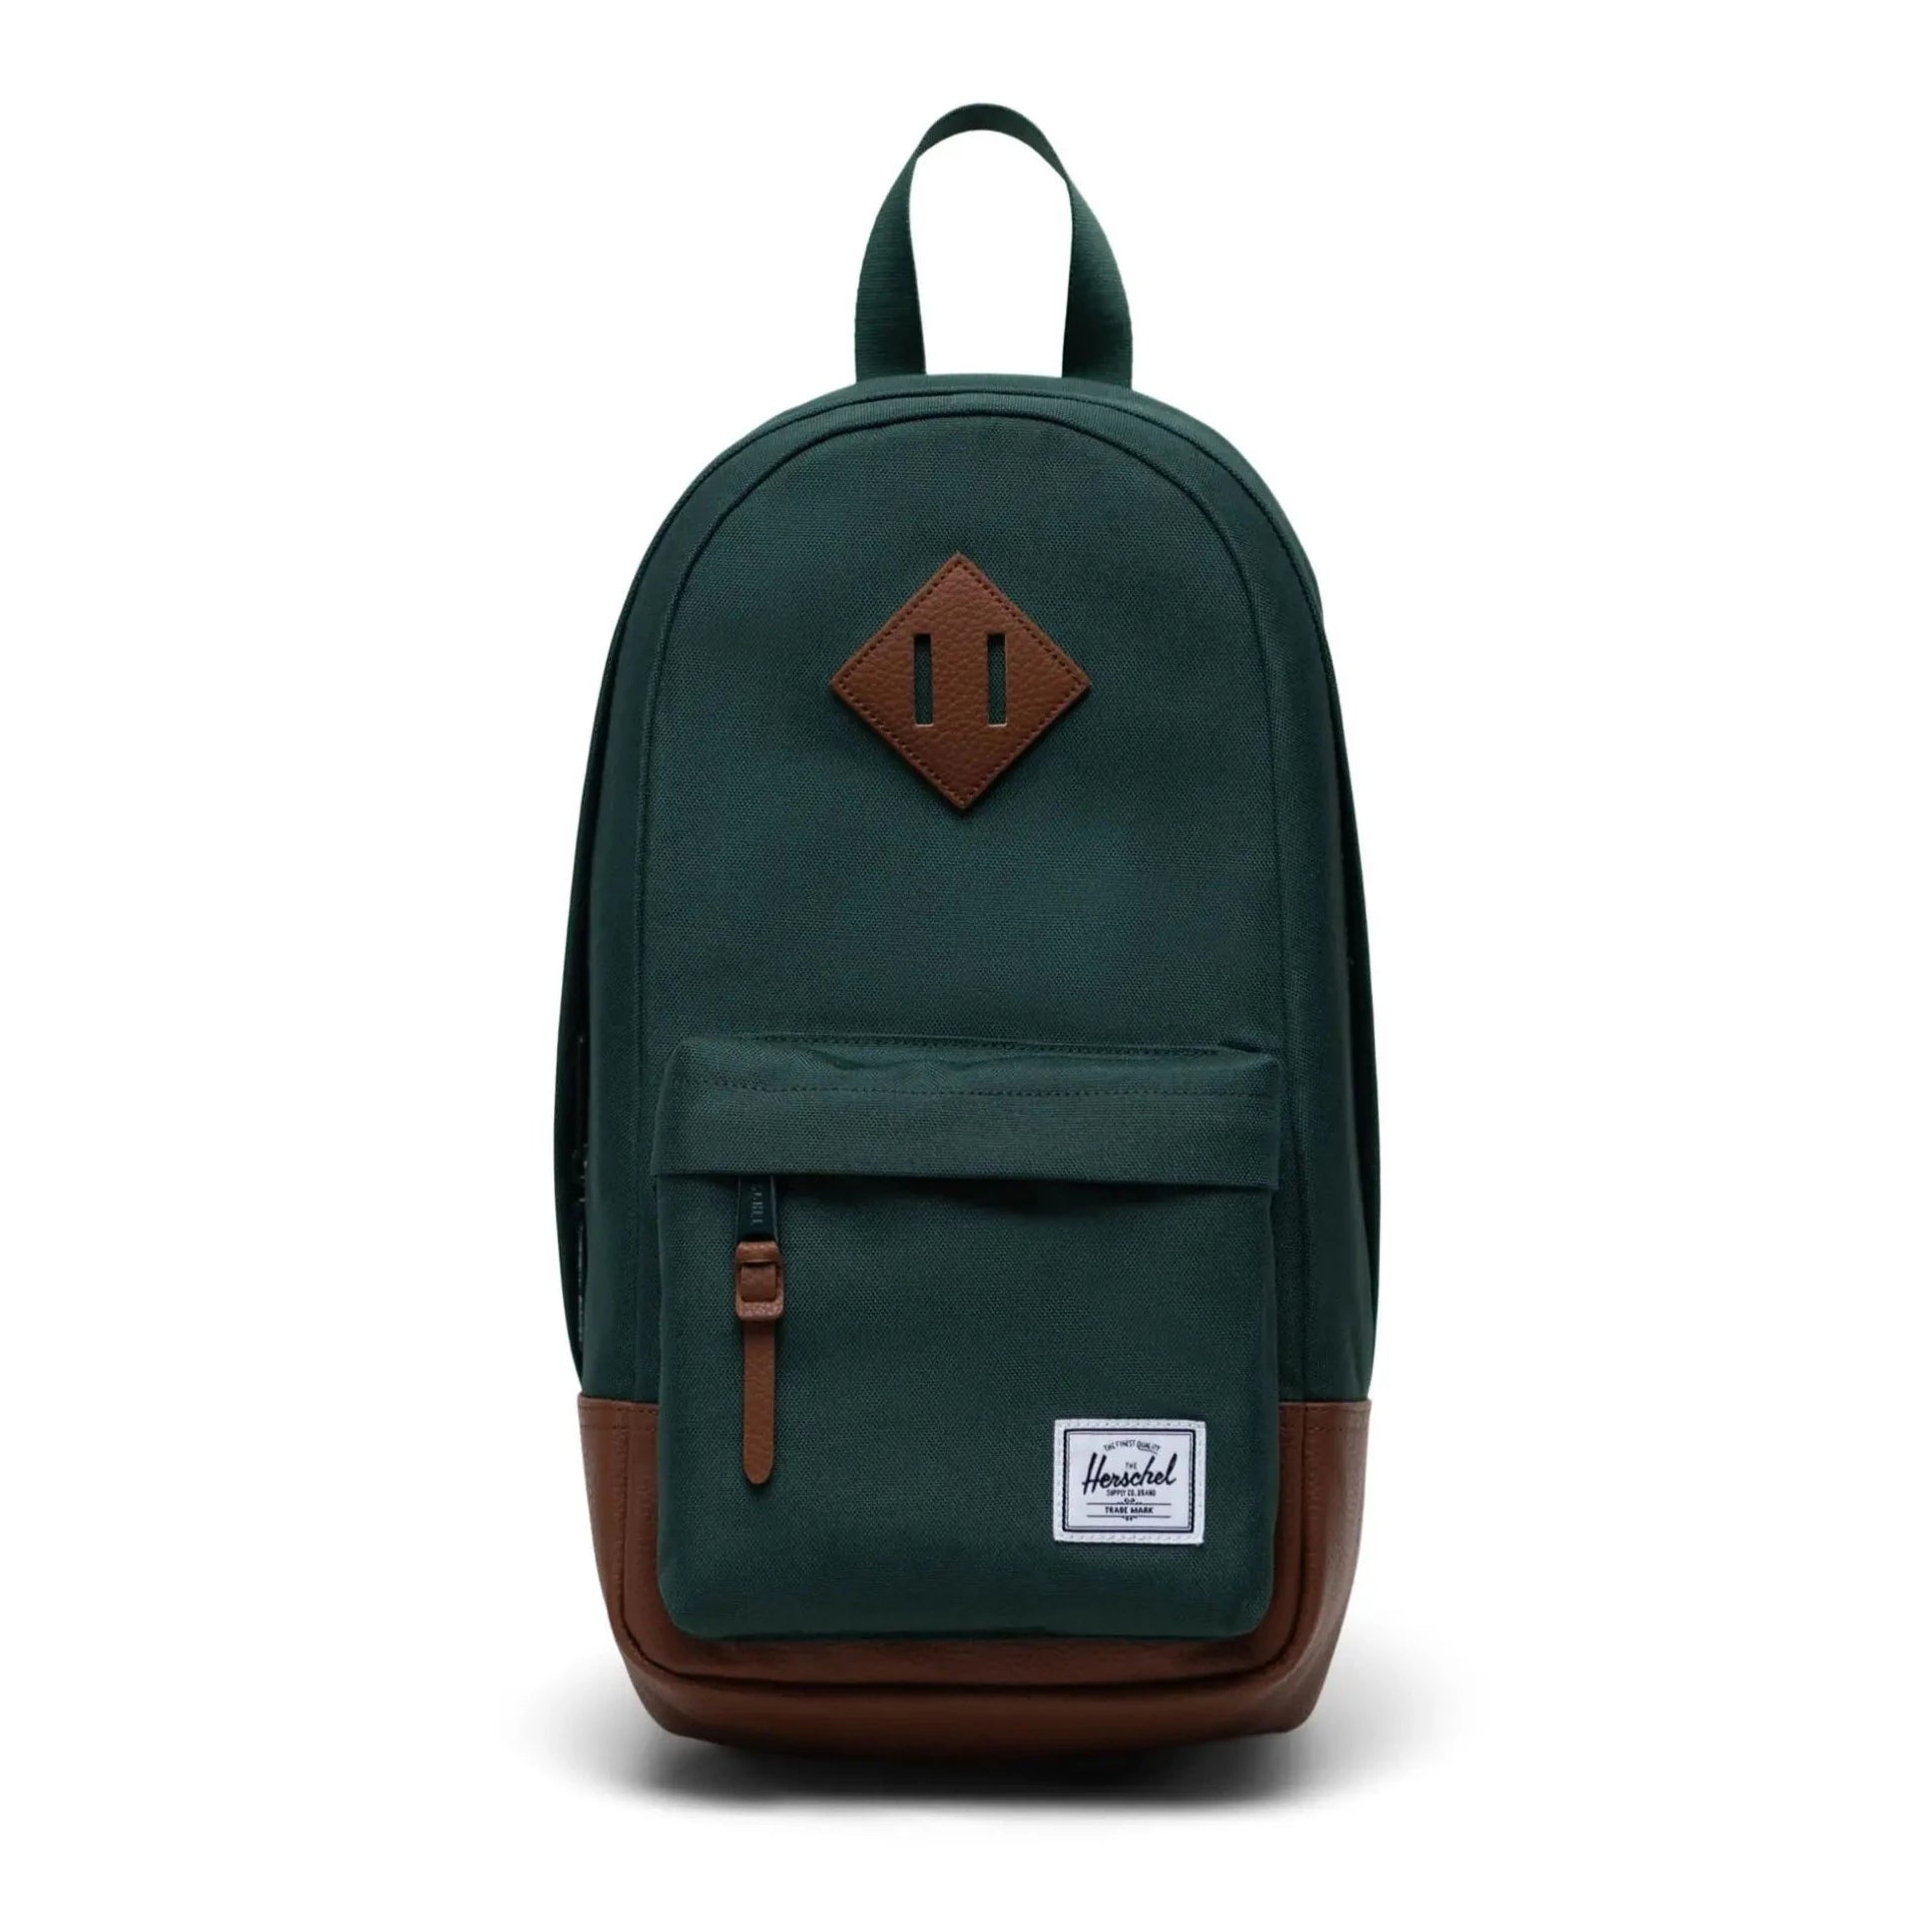 Herschel Heritage Shoulder Bag - Trekking Green/Tan